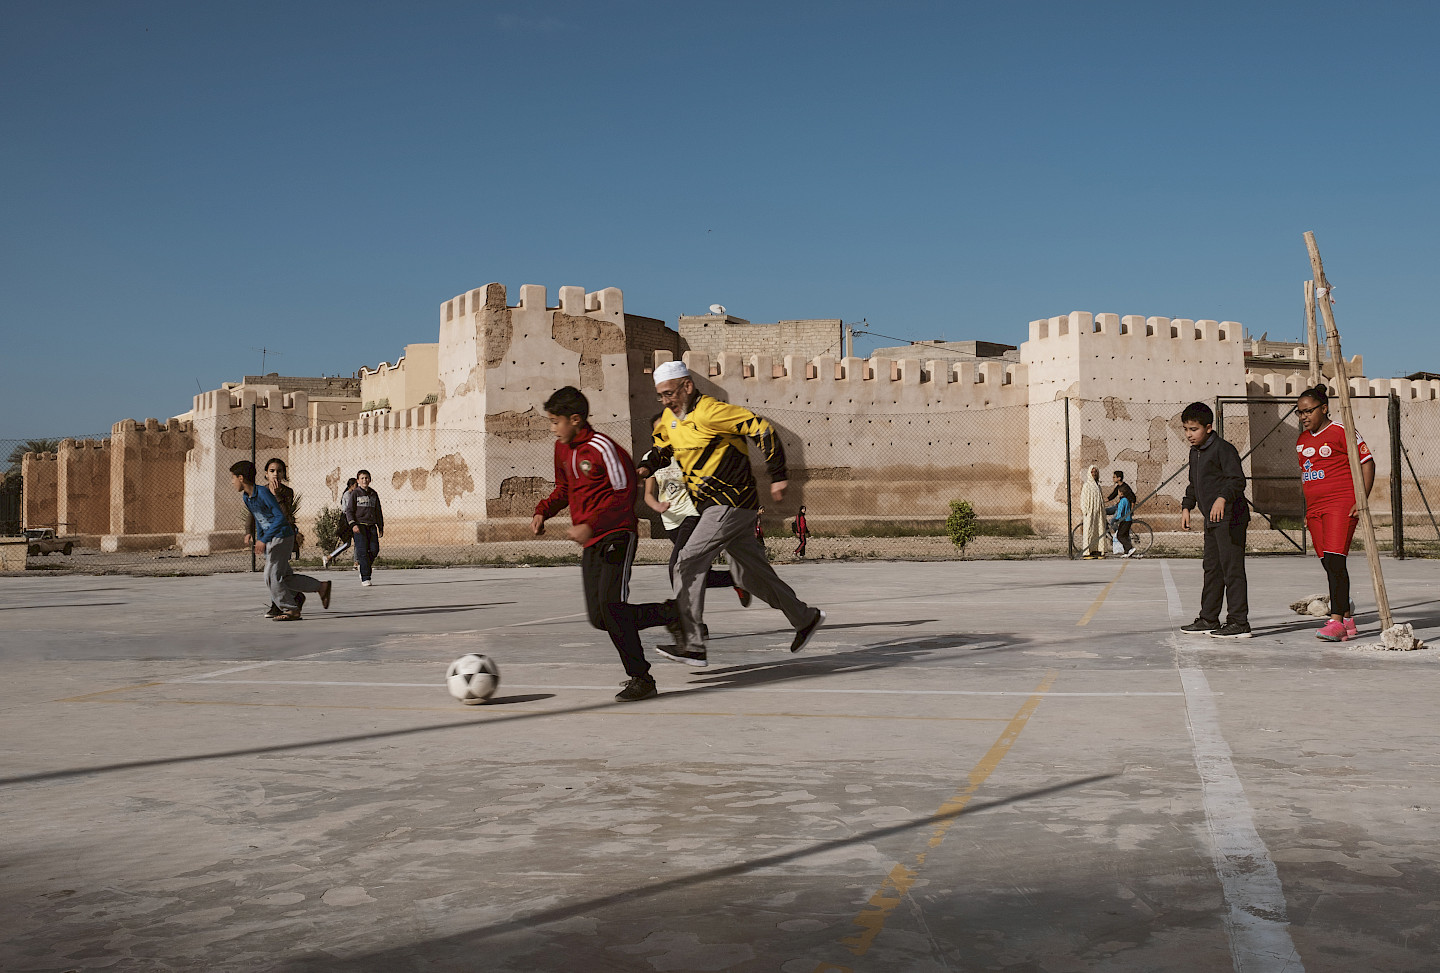 Talkrunde: Fussball, Kultur und Gesellschaft in der arabischen Welt (auf Englisch)